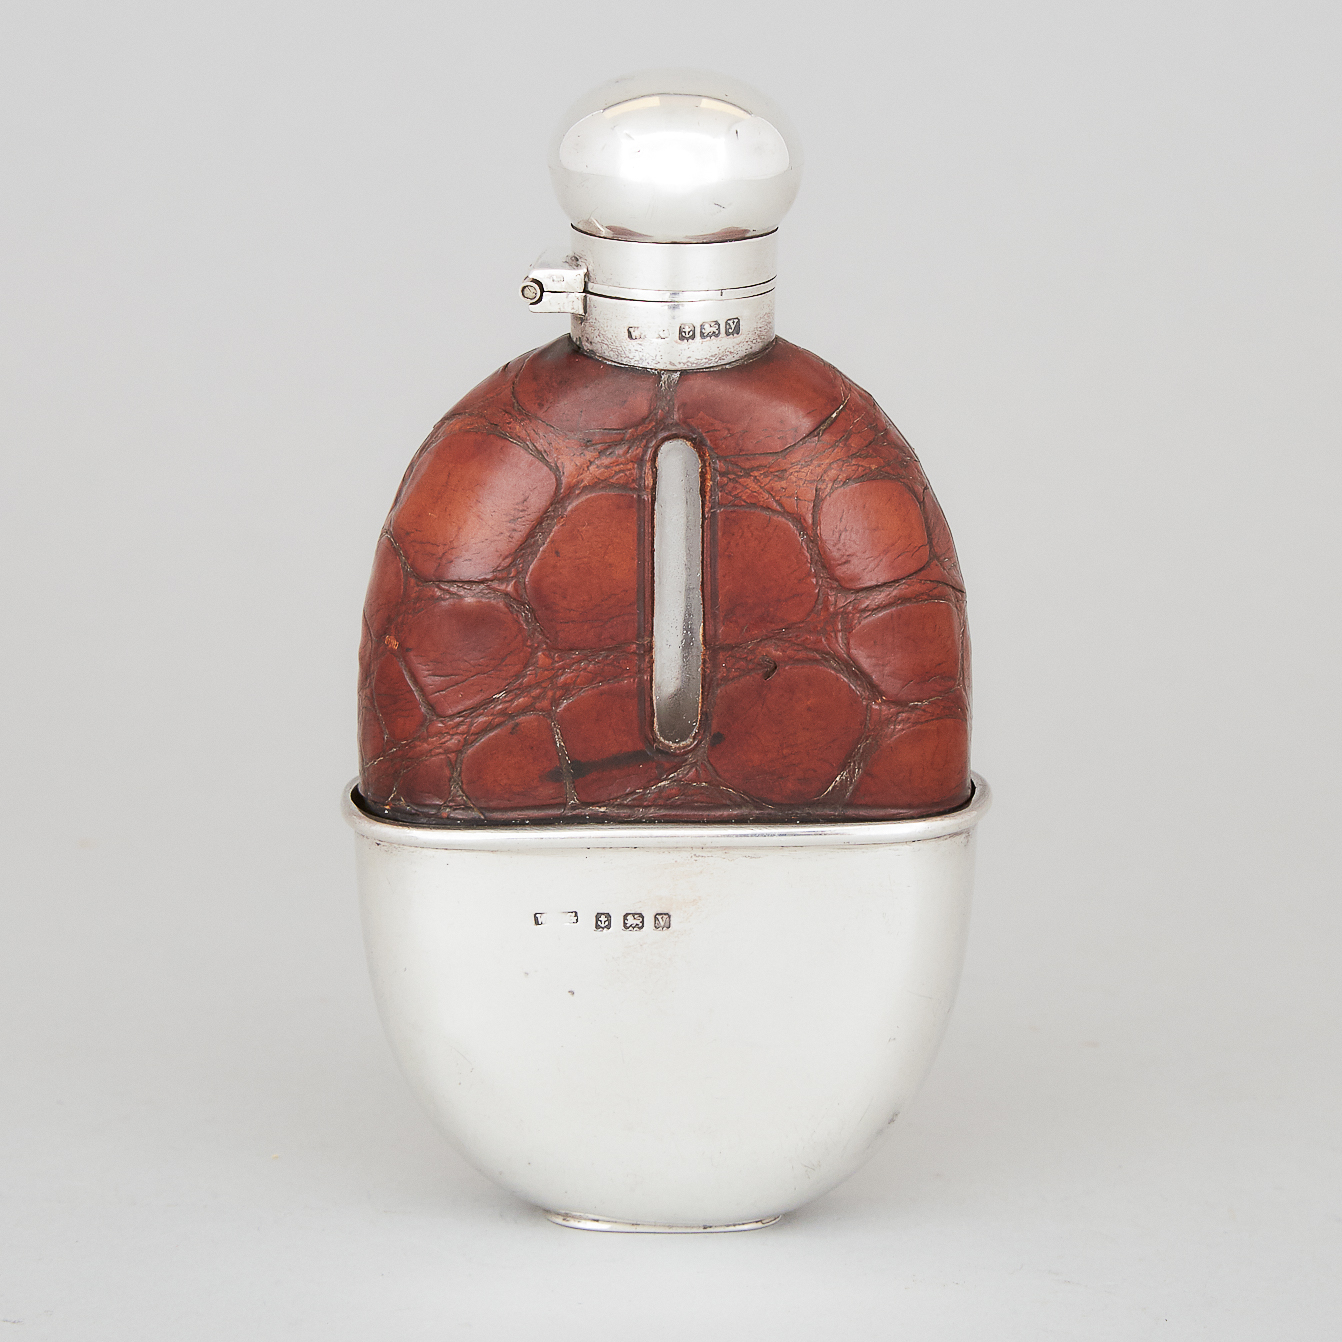 English Silver Mounted Spirit Flask, W.C. Grffiths, Birmingham, 1920/23